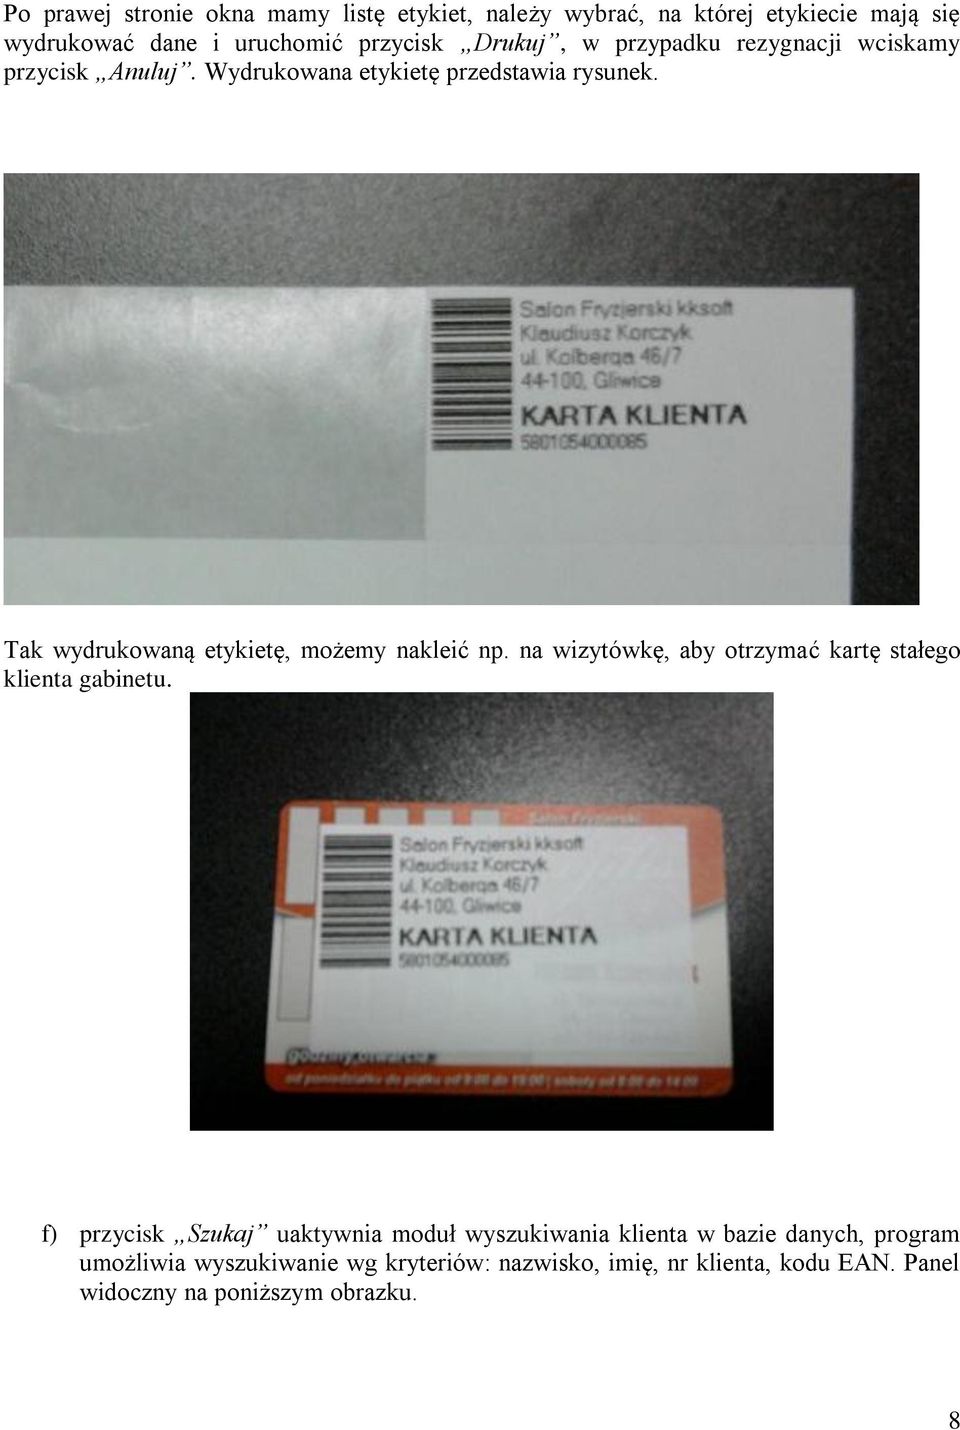 Tak wydrukowaną etykietę, możemy nakleić np. na wizytówkę, aby otrzymać kartę stałego klienta gabinetu.